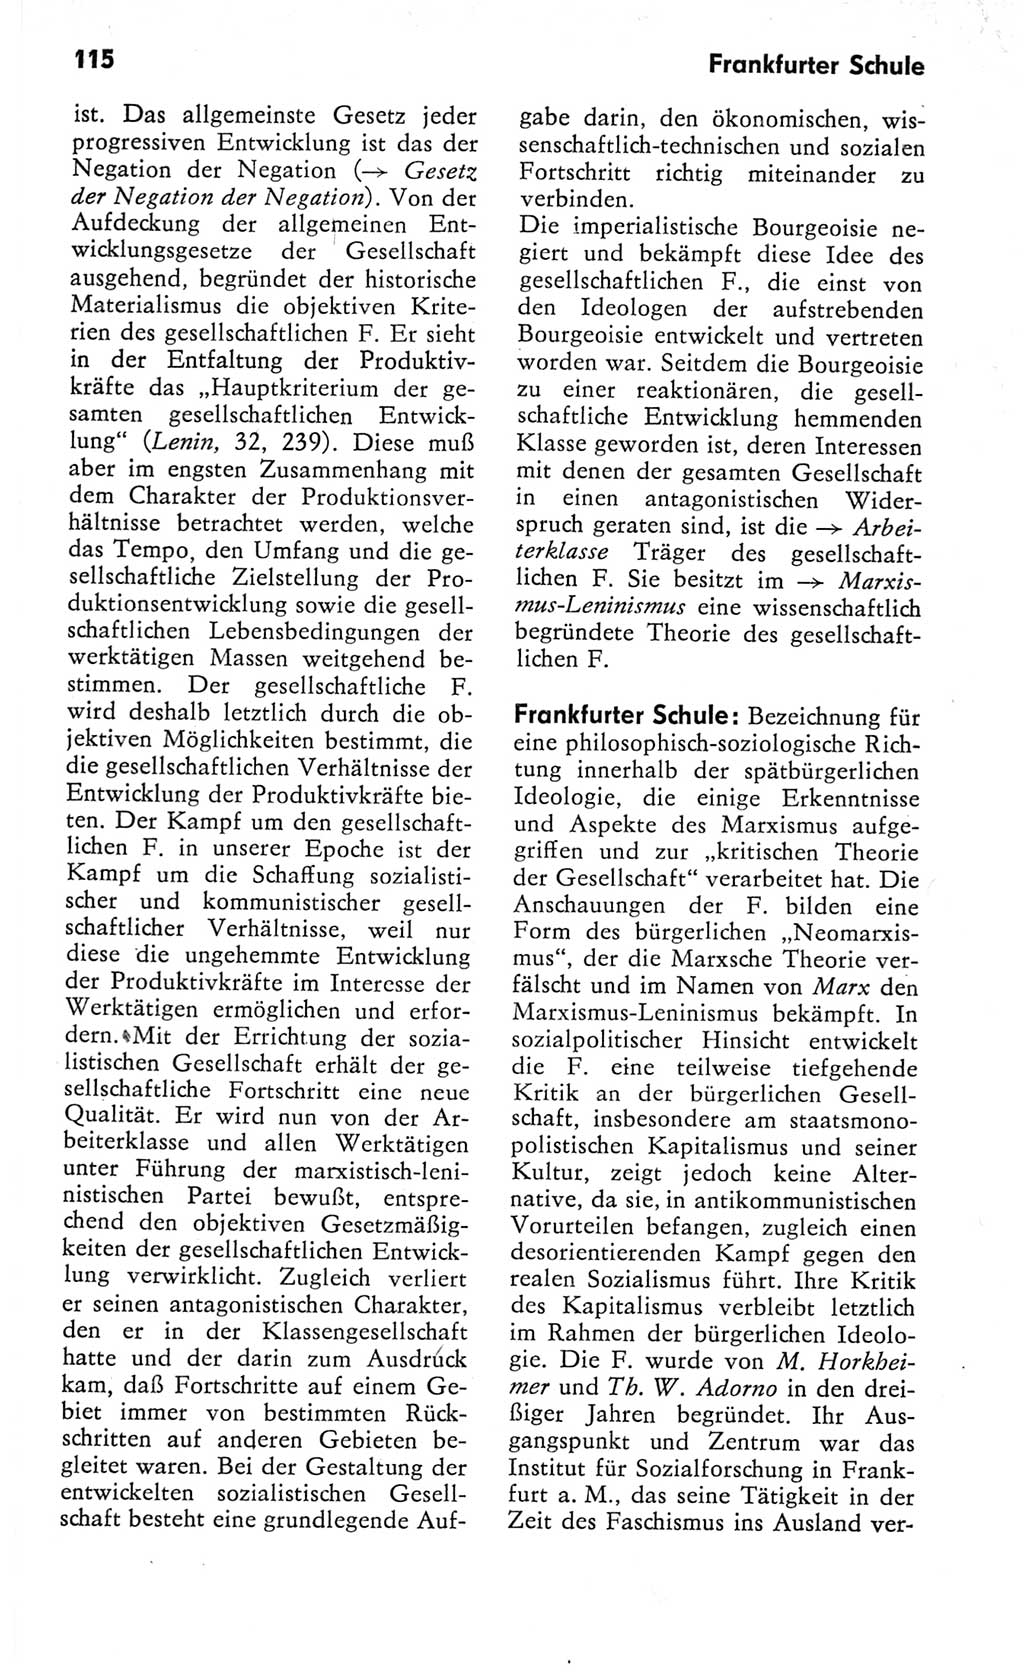 Kleines Wörterbuch der marxistisch-leninistischen Philosophie [Deutsche Demokratische Republik (DDR)] 1982, Seite 115 (Kl. Wb. ML Phil. DDR 1982, S. 115)